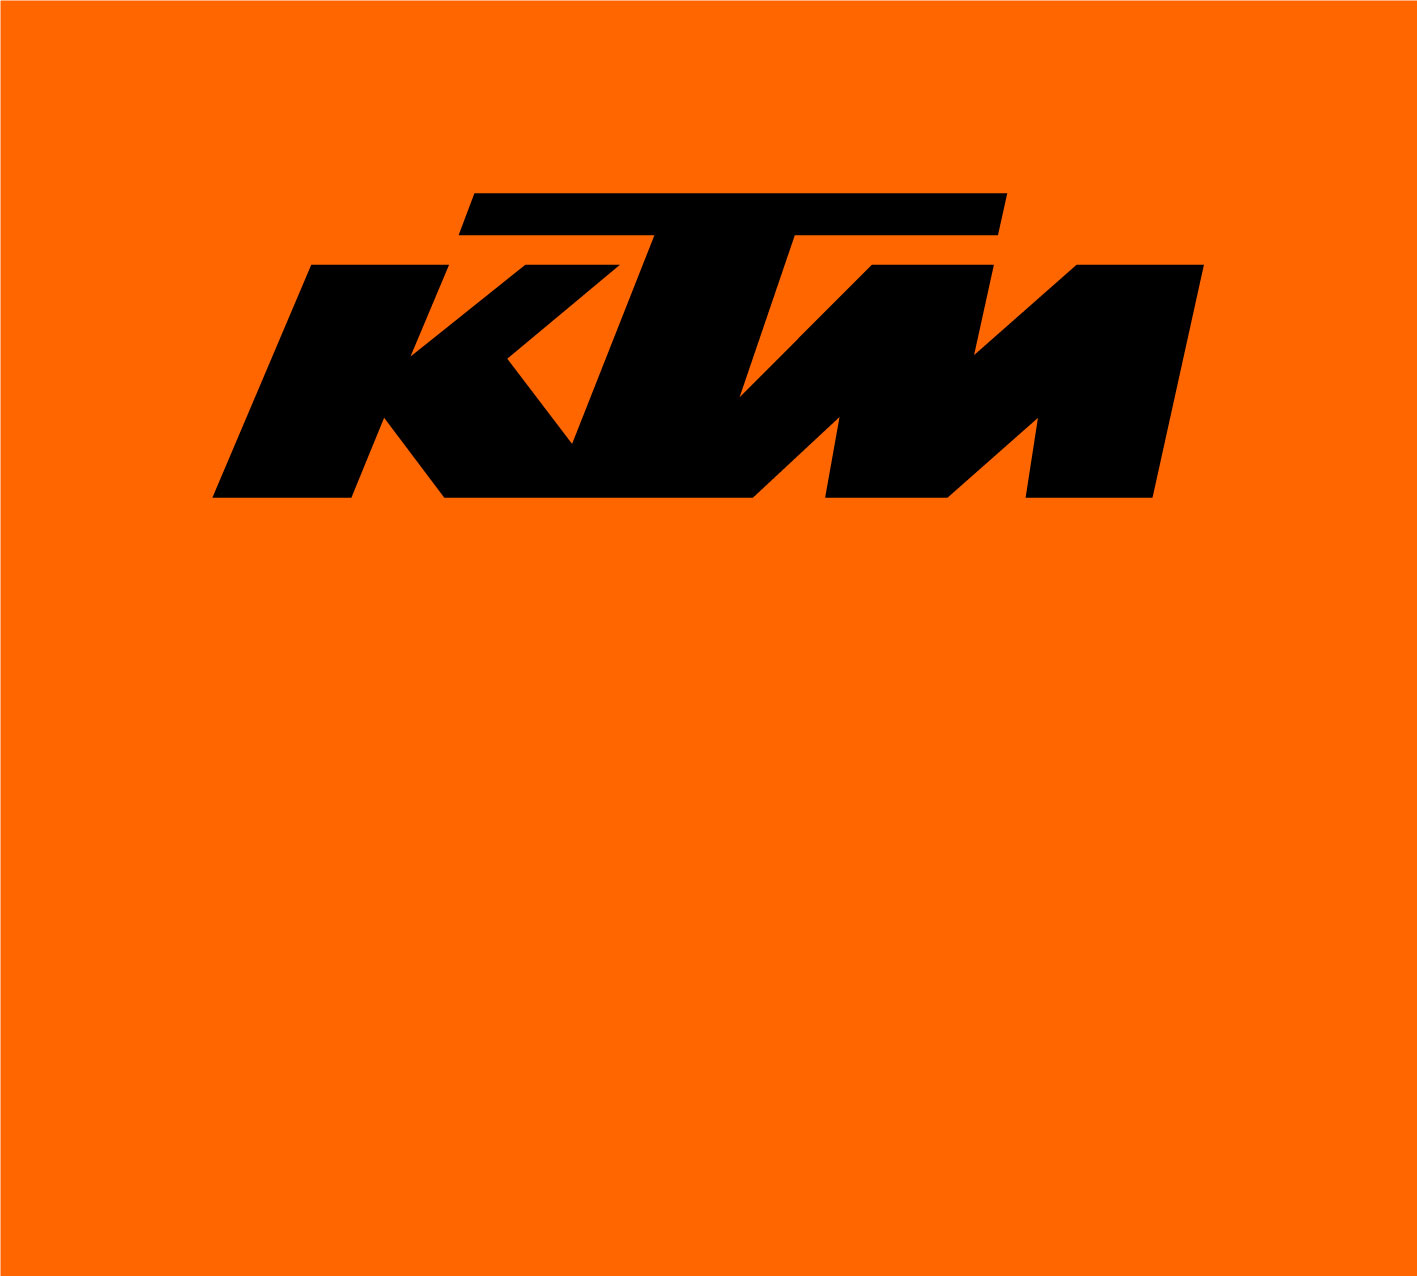 หน้าหลัฝจัฝรยานยนต์ KTM